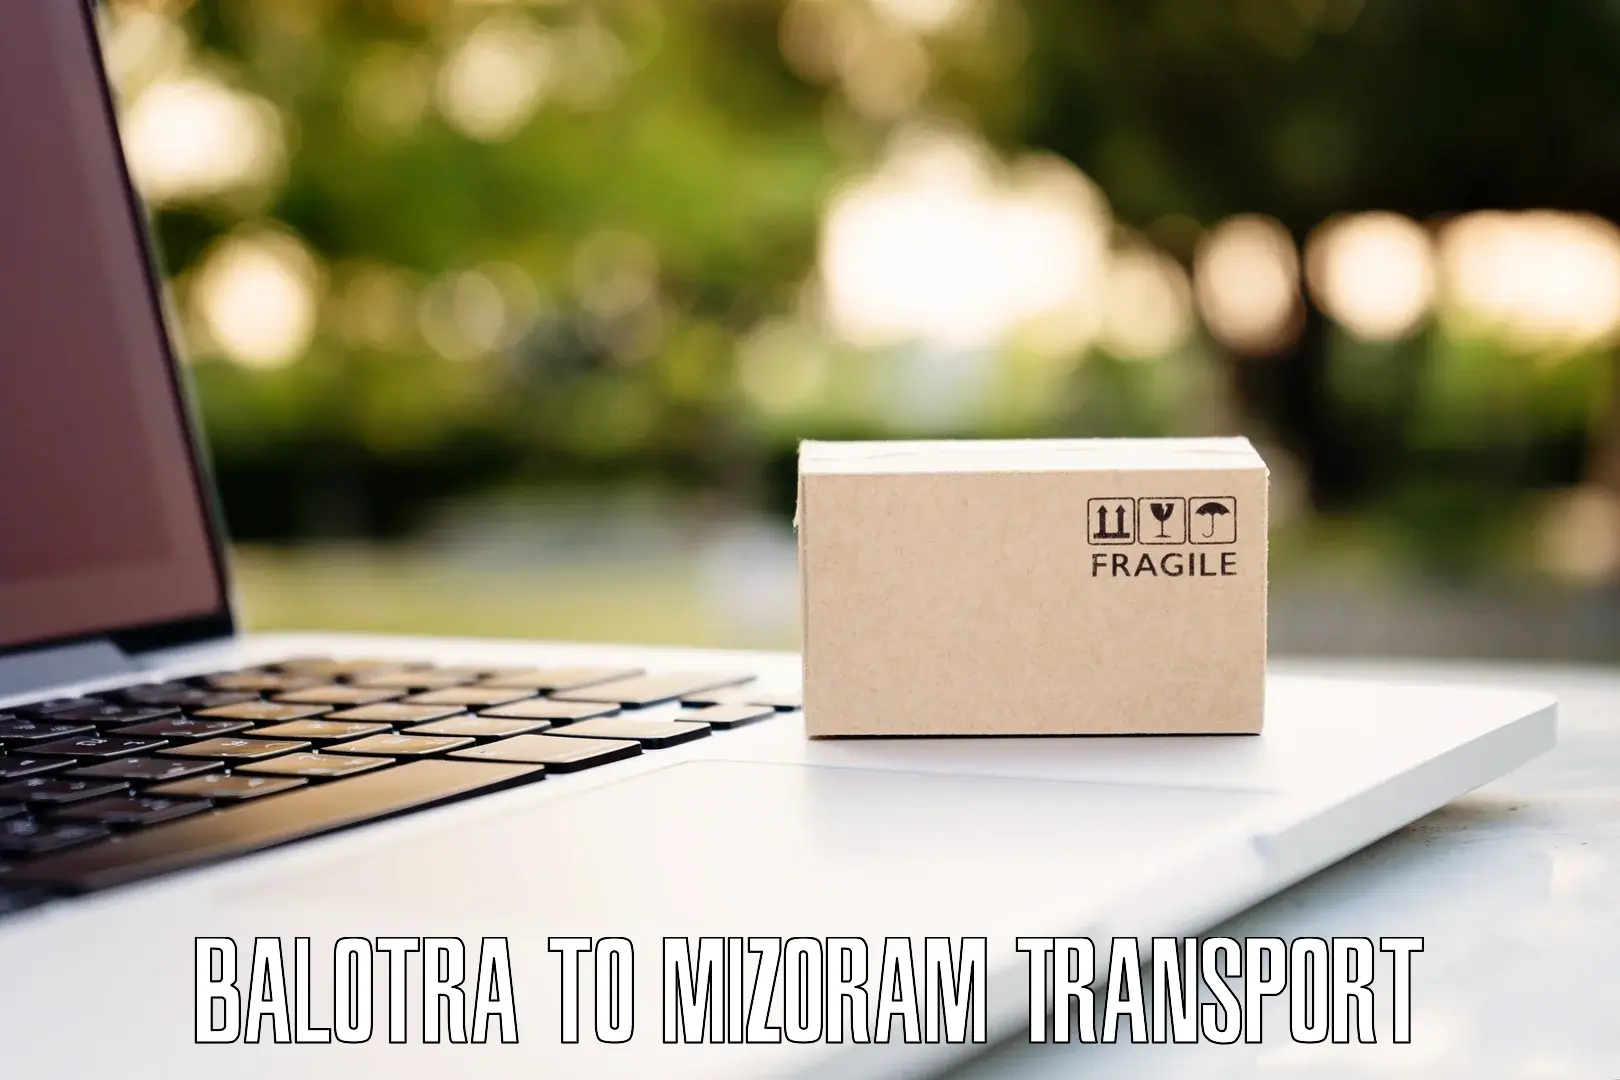 Delivery service Balotra to Aizawl